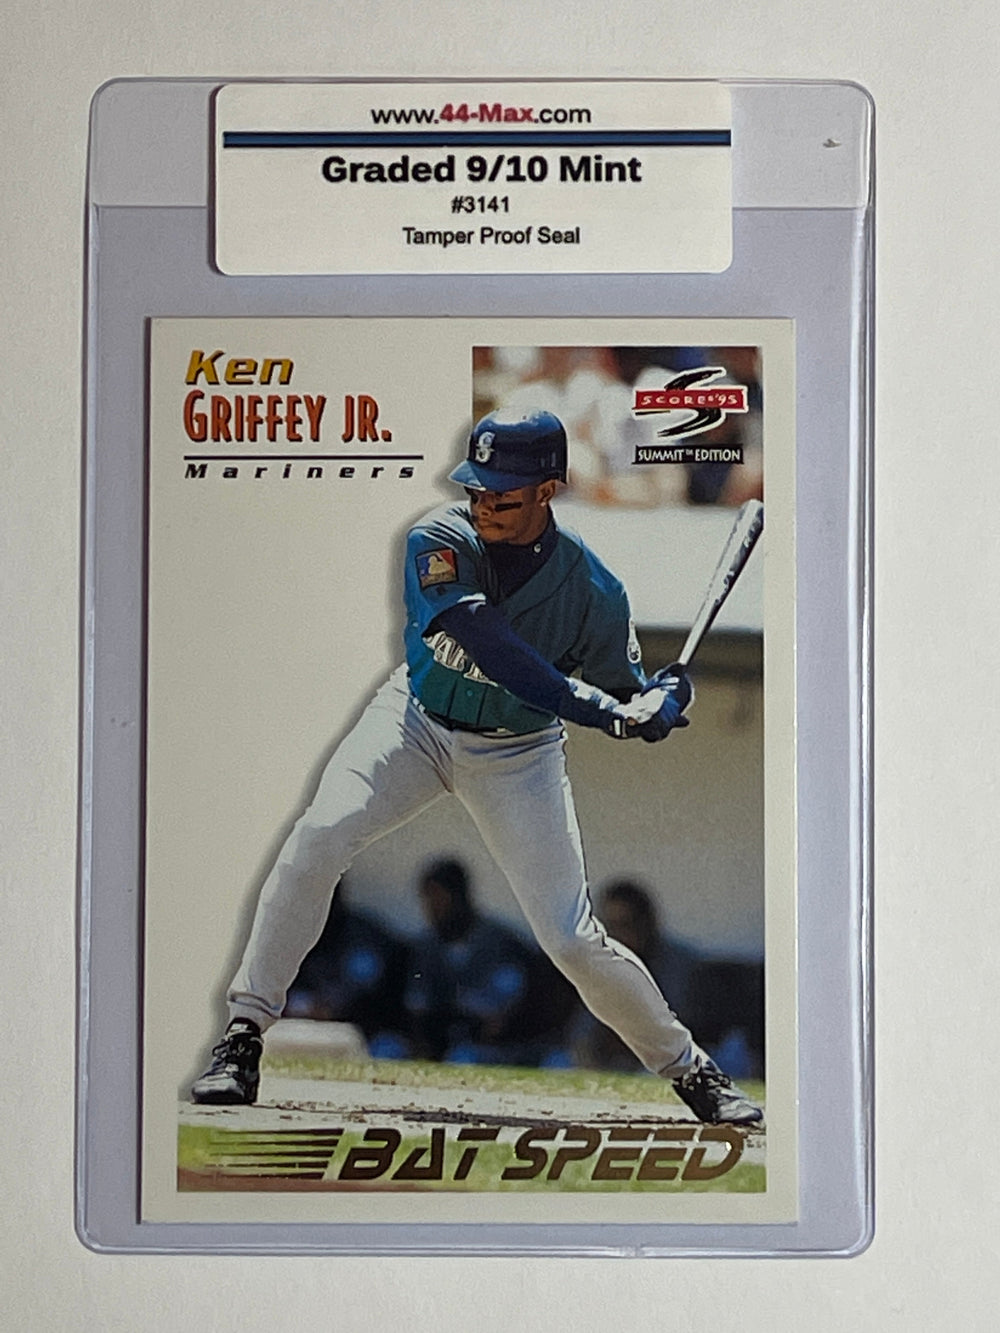 Ken Griffey Jr BS 1995 Score Summit Baseball Card. 44-Max 9/10 Mint  #3141